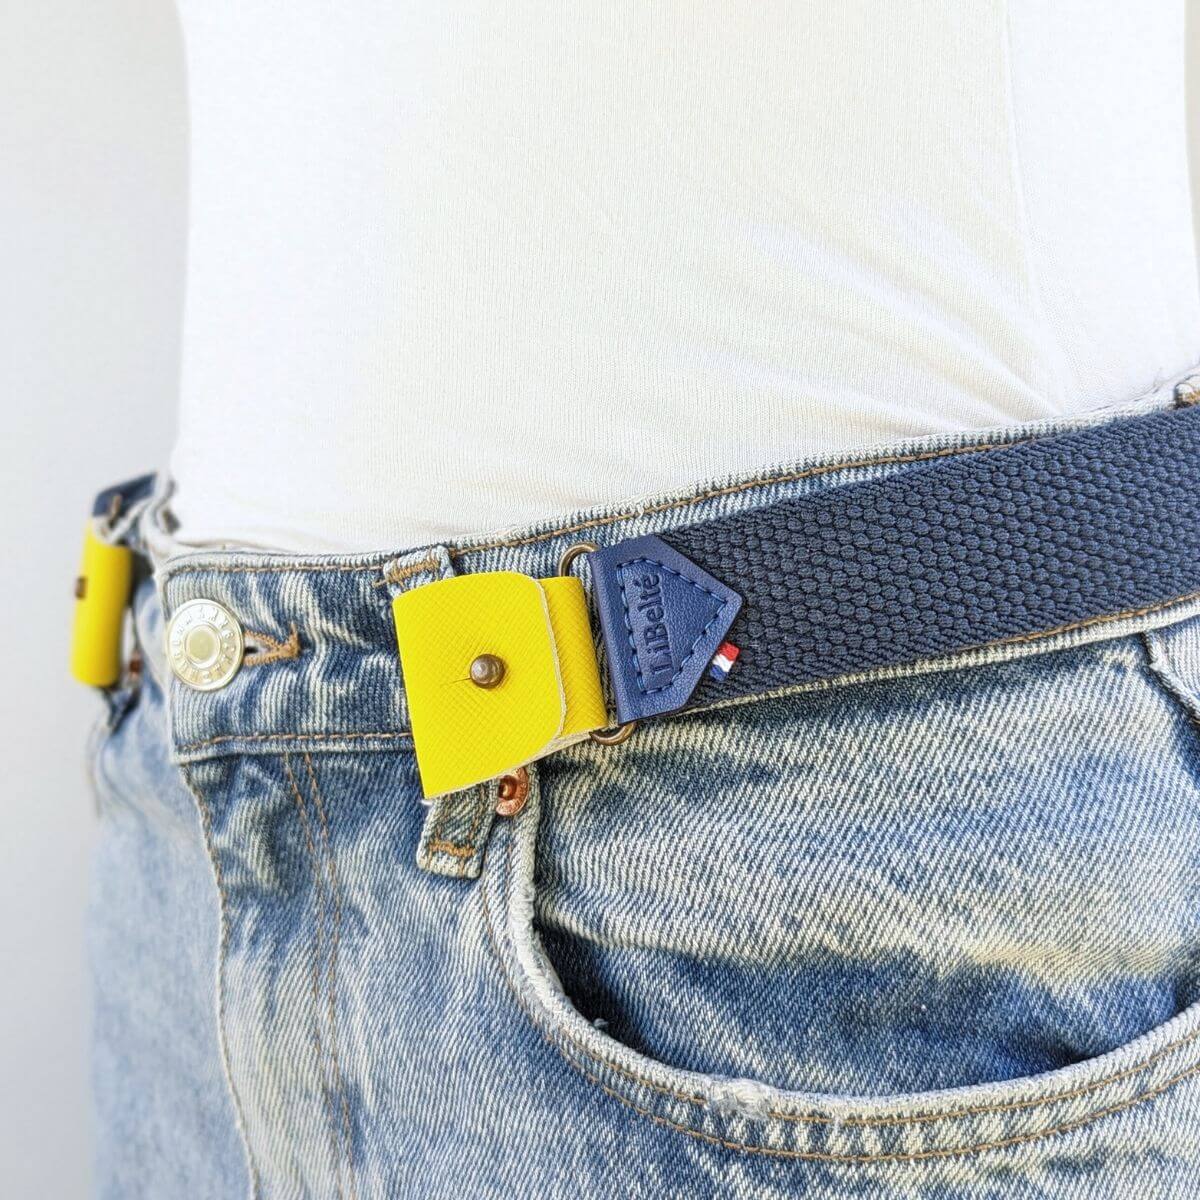 clips pour ceinture sans boucle elastique jaune sur ceinture bleu 2